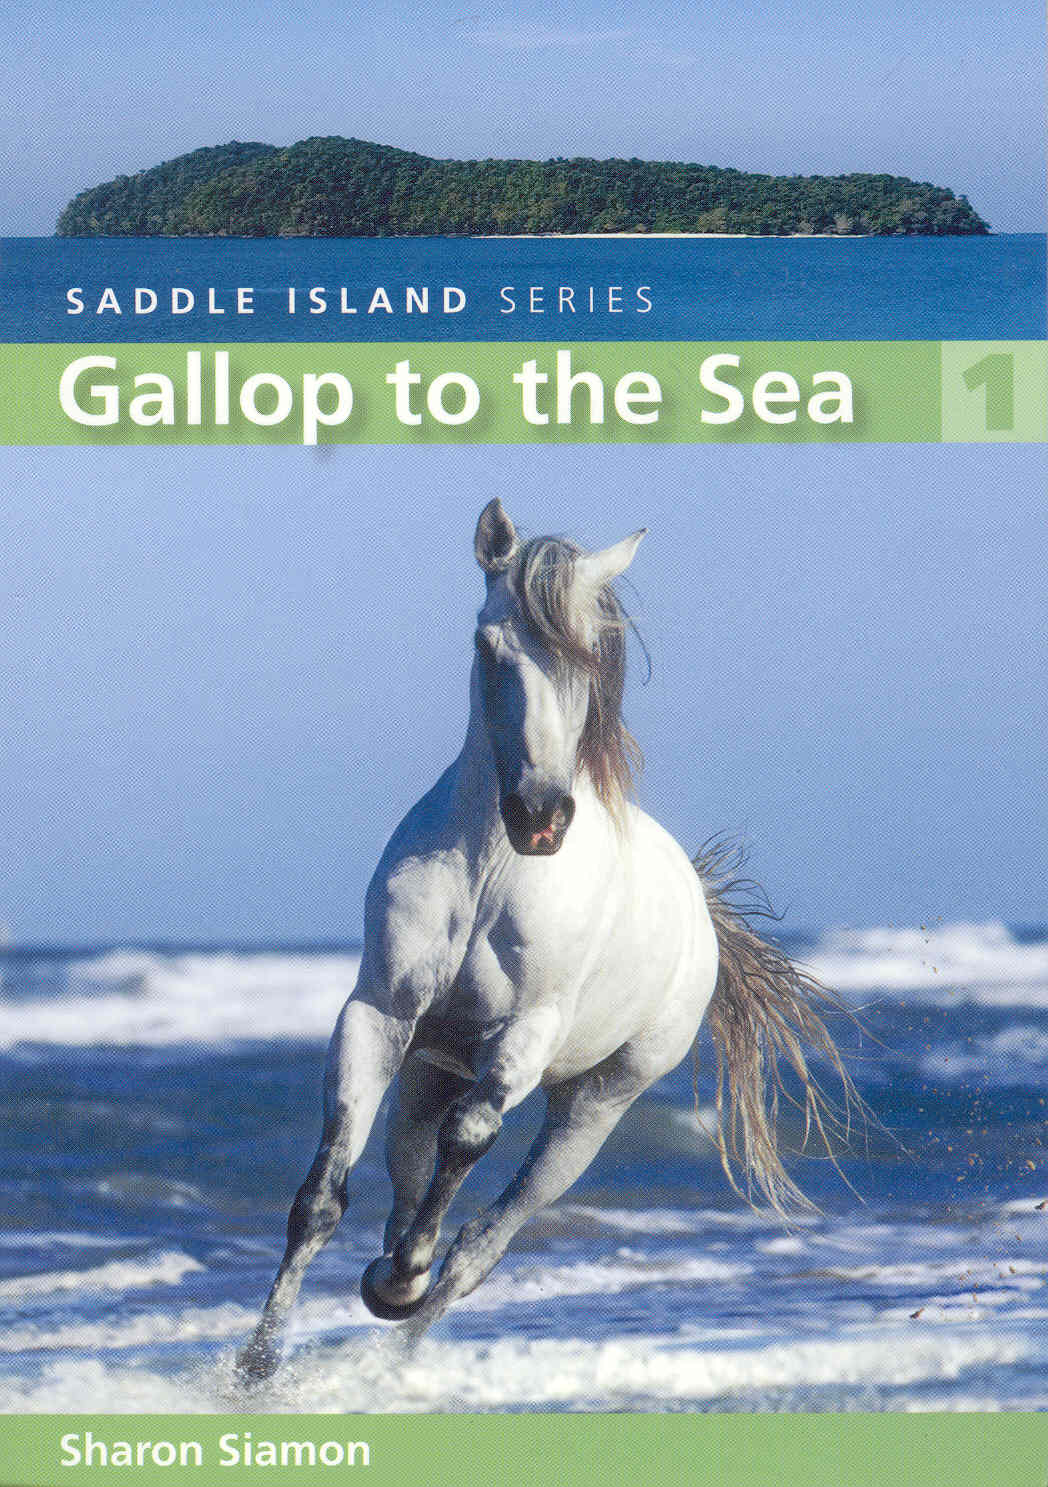 Gallop to the Sea